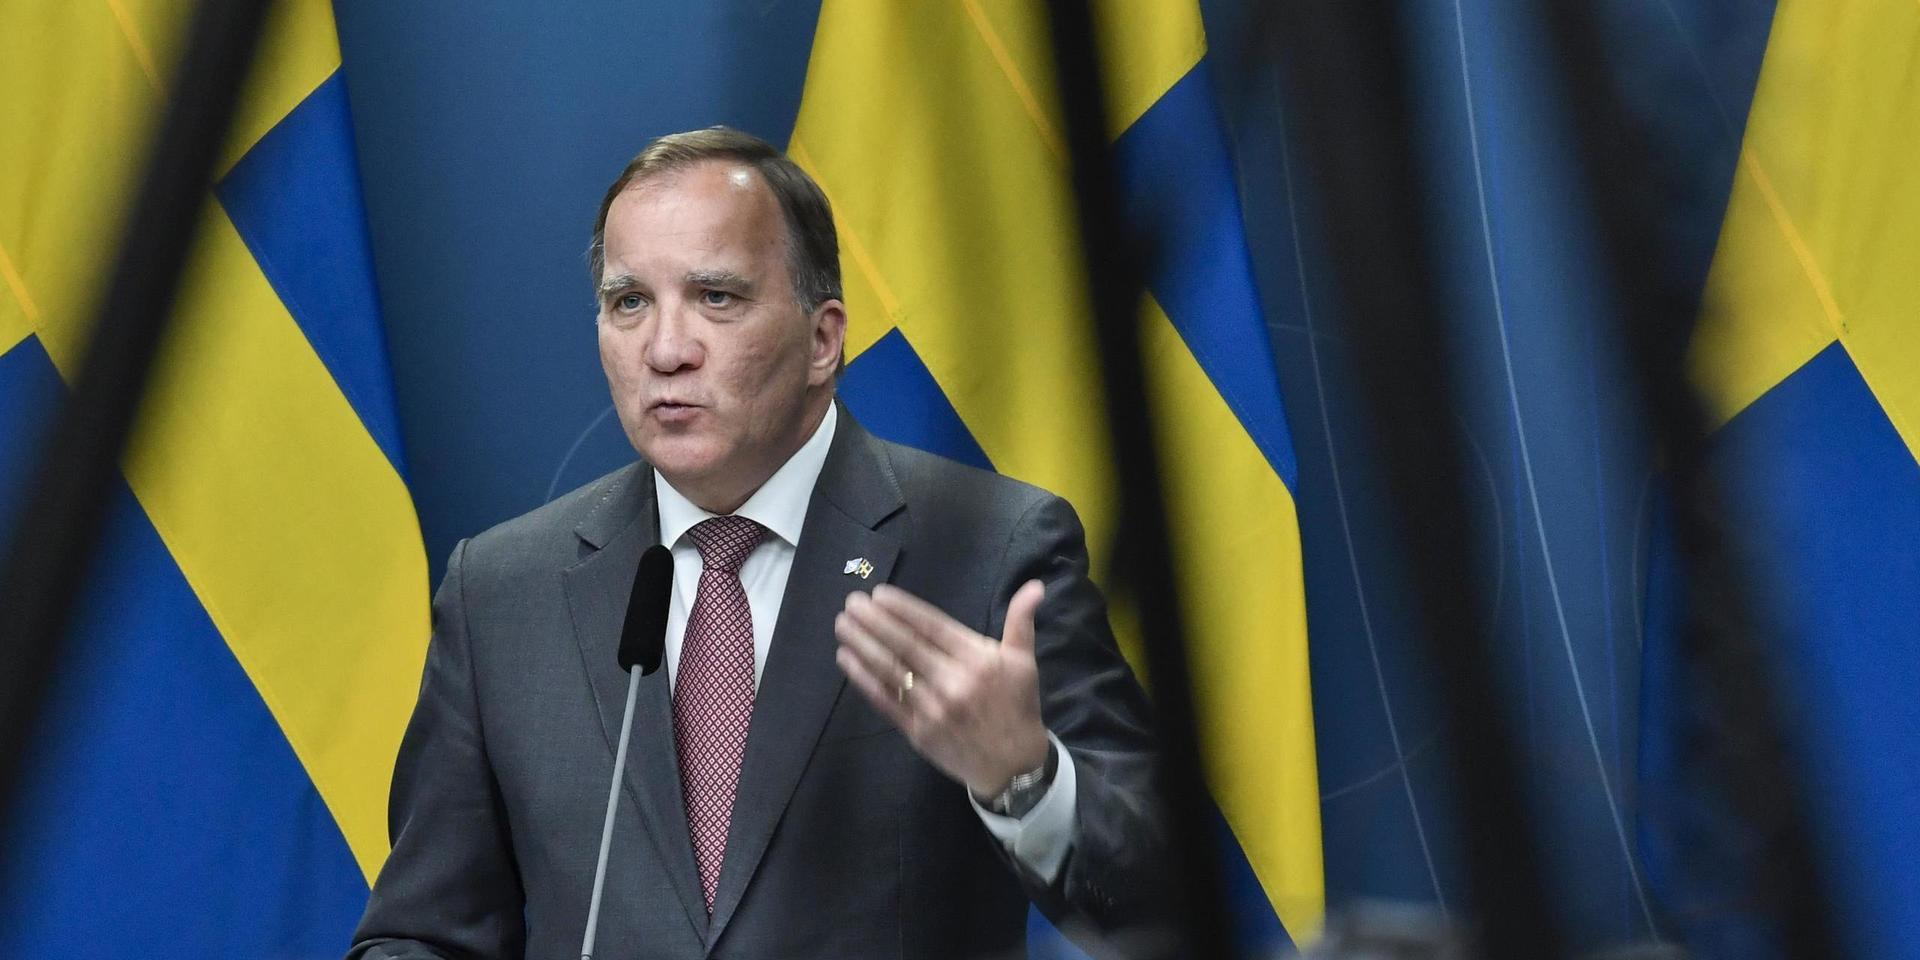 Statsminister Stefan Löfven under torsdagens pressträff på Rosenbad i Stockholm efter beskedet om att Sverigedemokraterna har begärt omröstning om misstroendeförklaring.